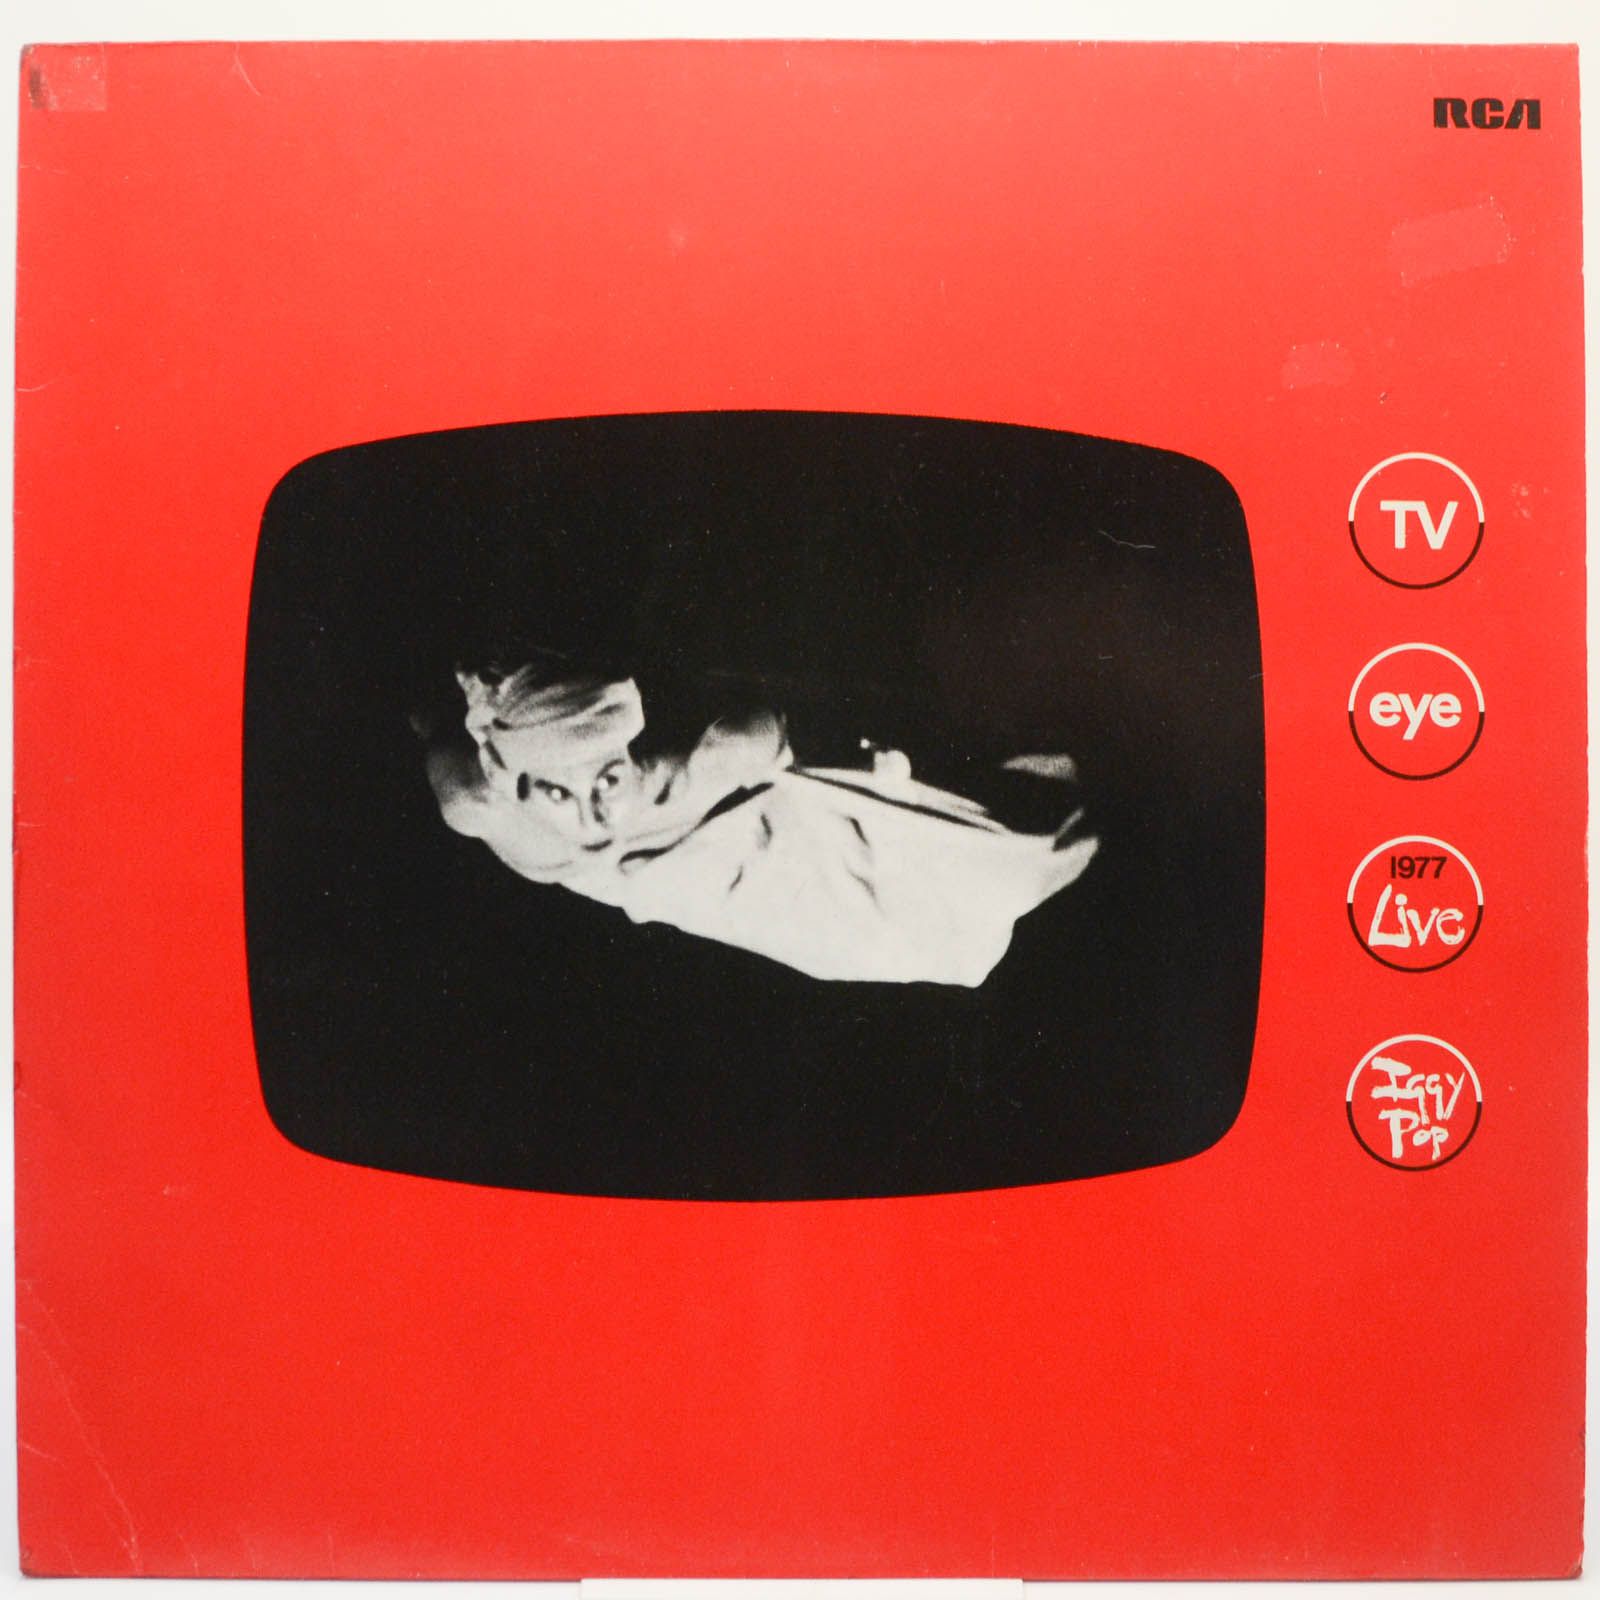 Iggy Pop — TV Eye 1977 Live, 1978